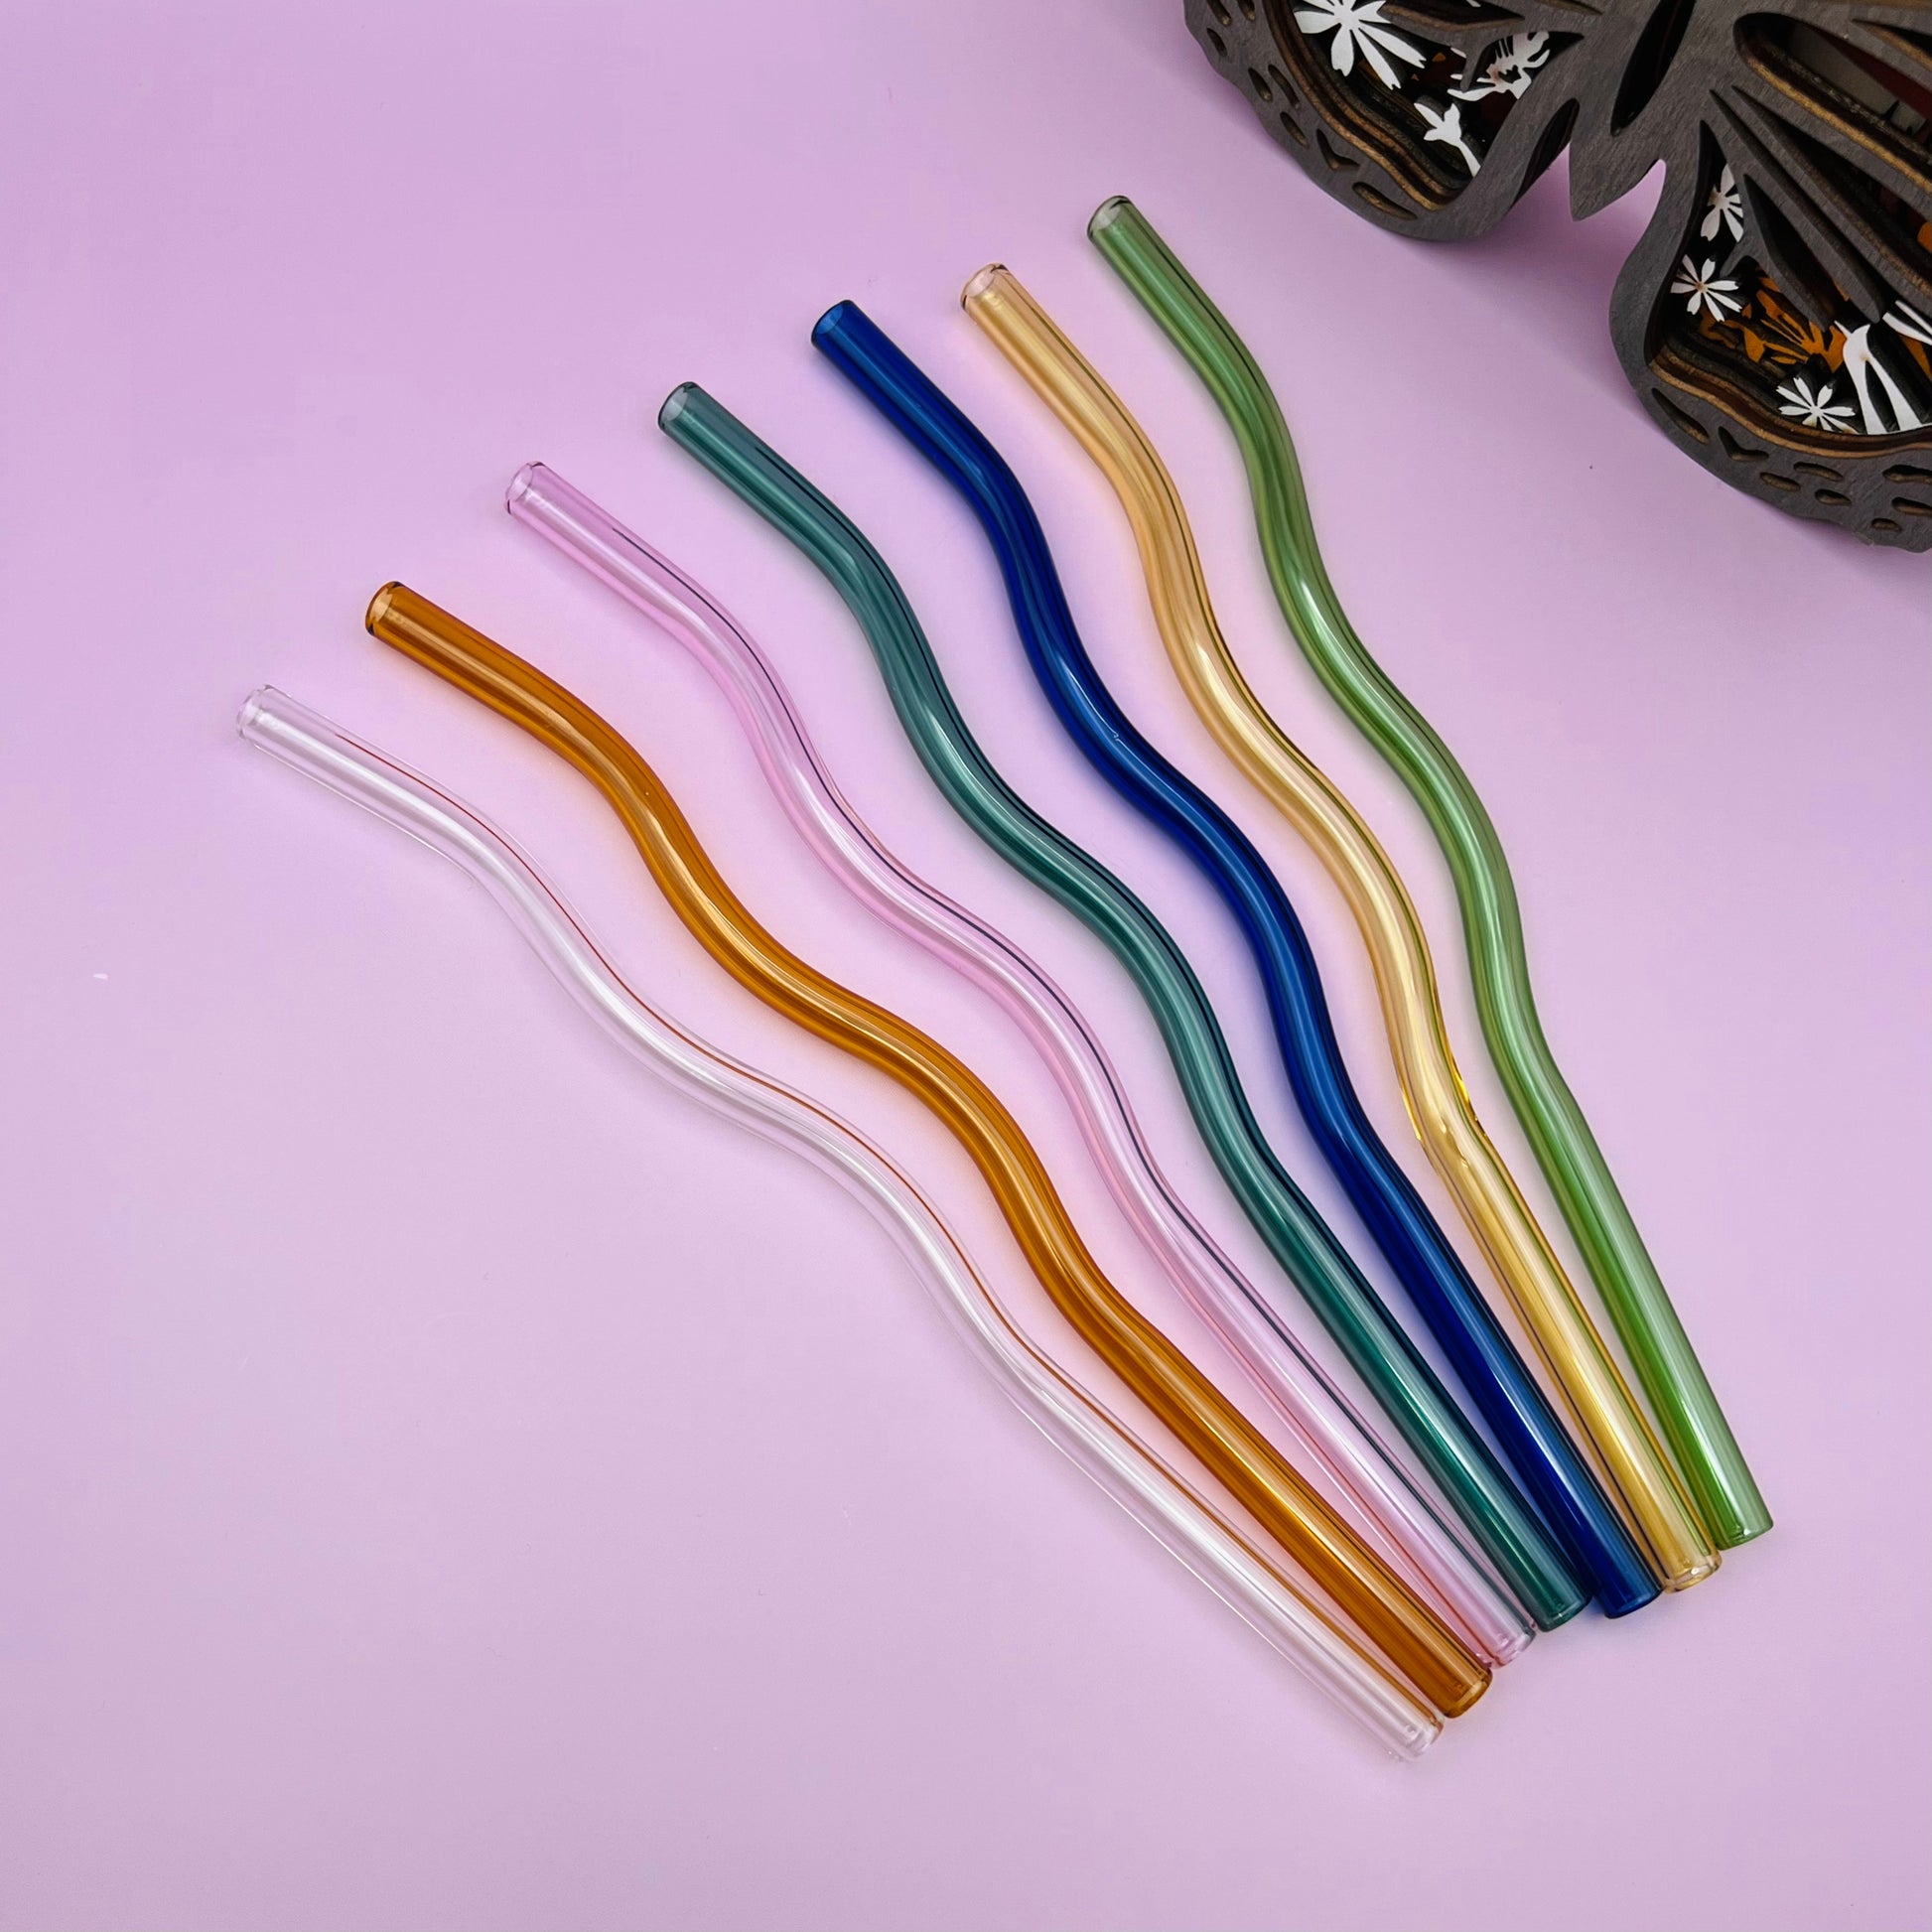 Wavy Glass Straw Reusable Glass Straws Glass with Straw - China Wavy Glass  Straw and Reusable Glass Straws price